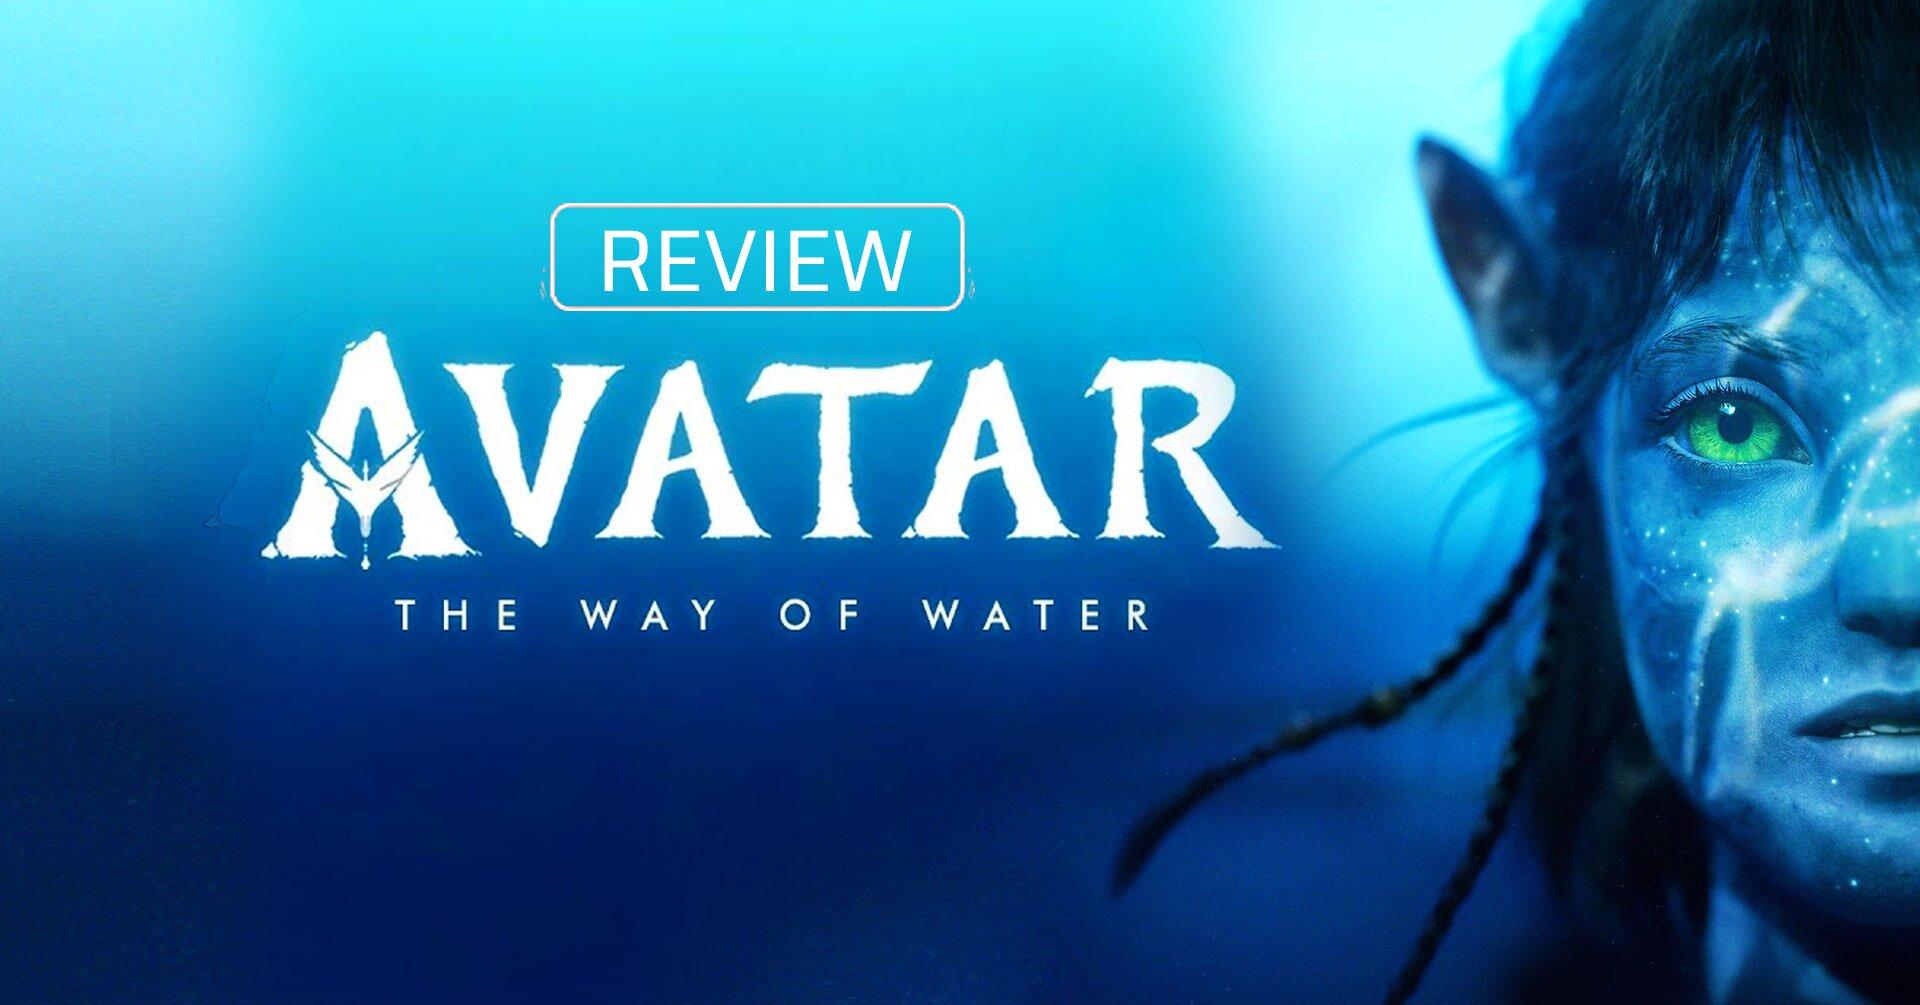 Review Avatar 2 The Way Of Water Phong Cách Phim Marvel Nhưng Là Màu Xanh Bloganchoi 3803